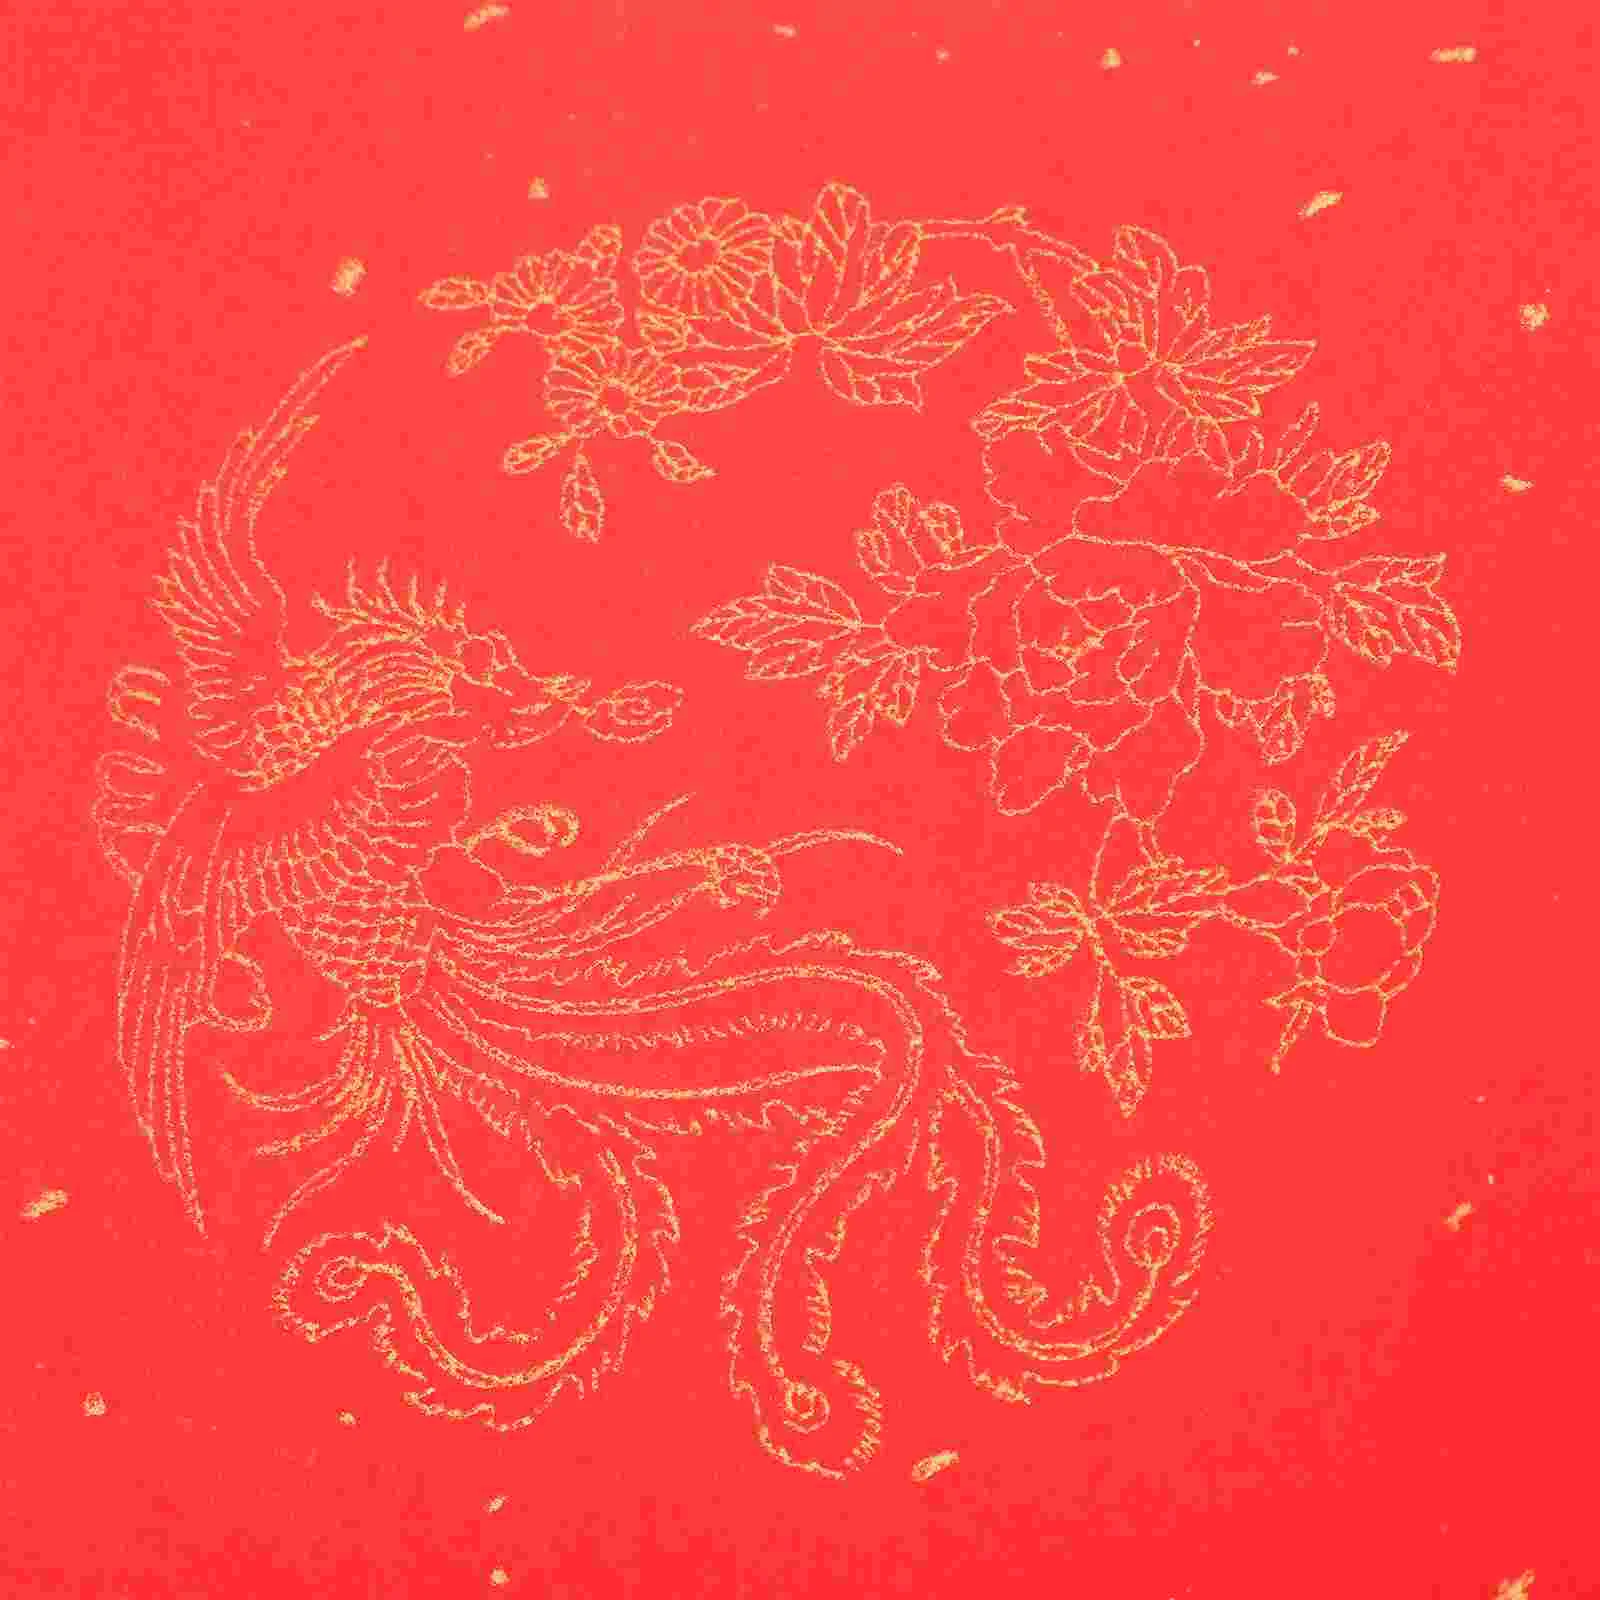 1 גליל של נייר אדום פסטיבל האביב השלטים גלול אדום נייר אורז סיני נייר ריק התמונה 1